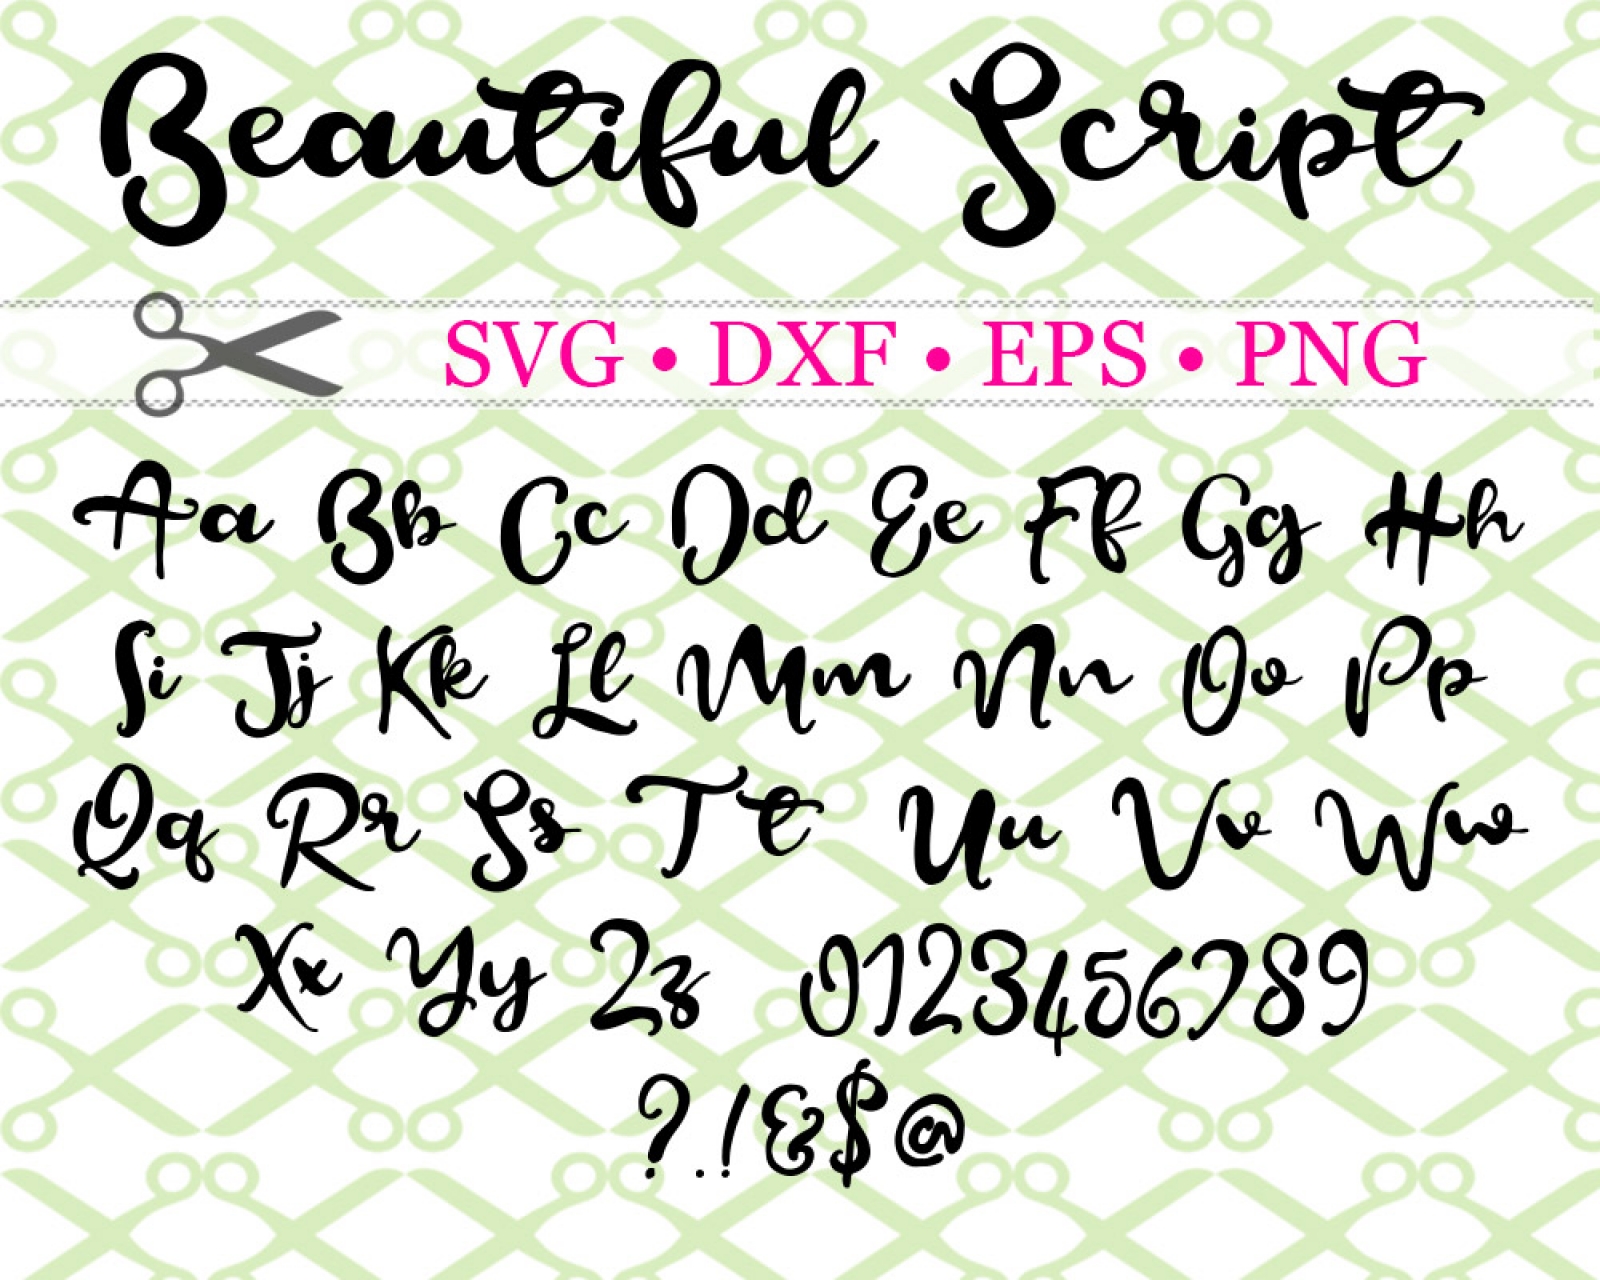 BEAUTIFUL SCRIPT SVG FONT-Cricut & Silhouette Files SVG DXF EPS PNG ...